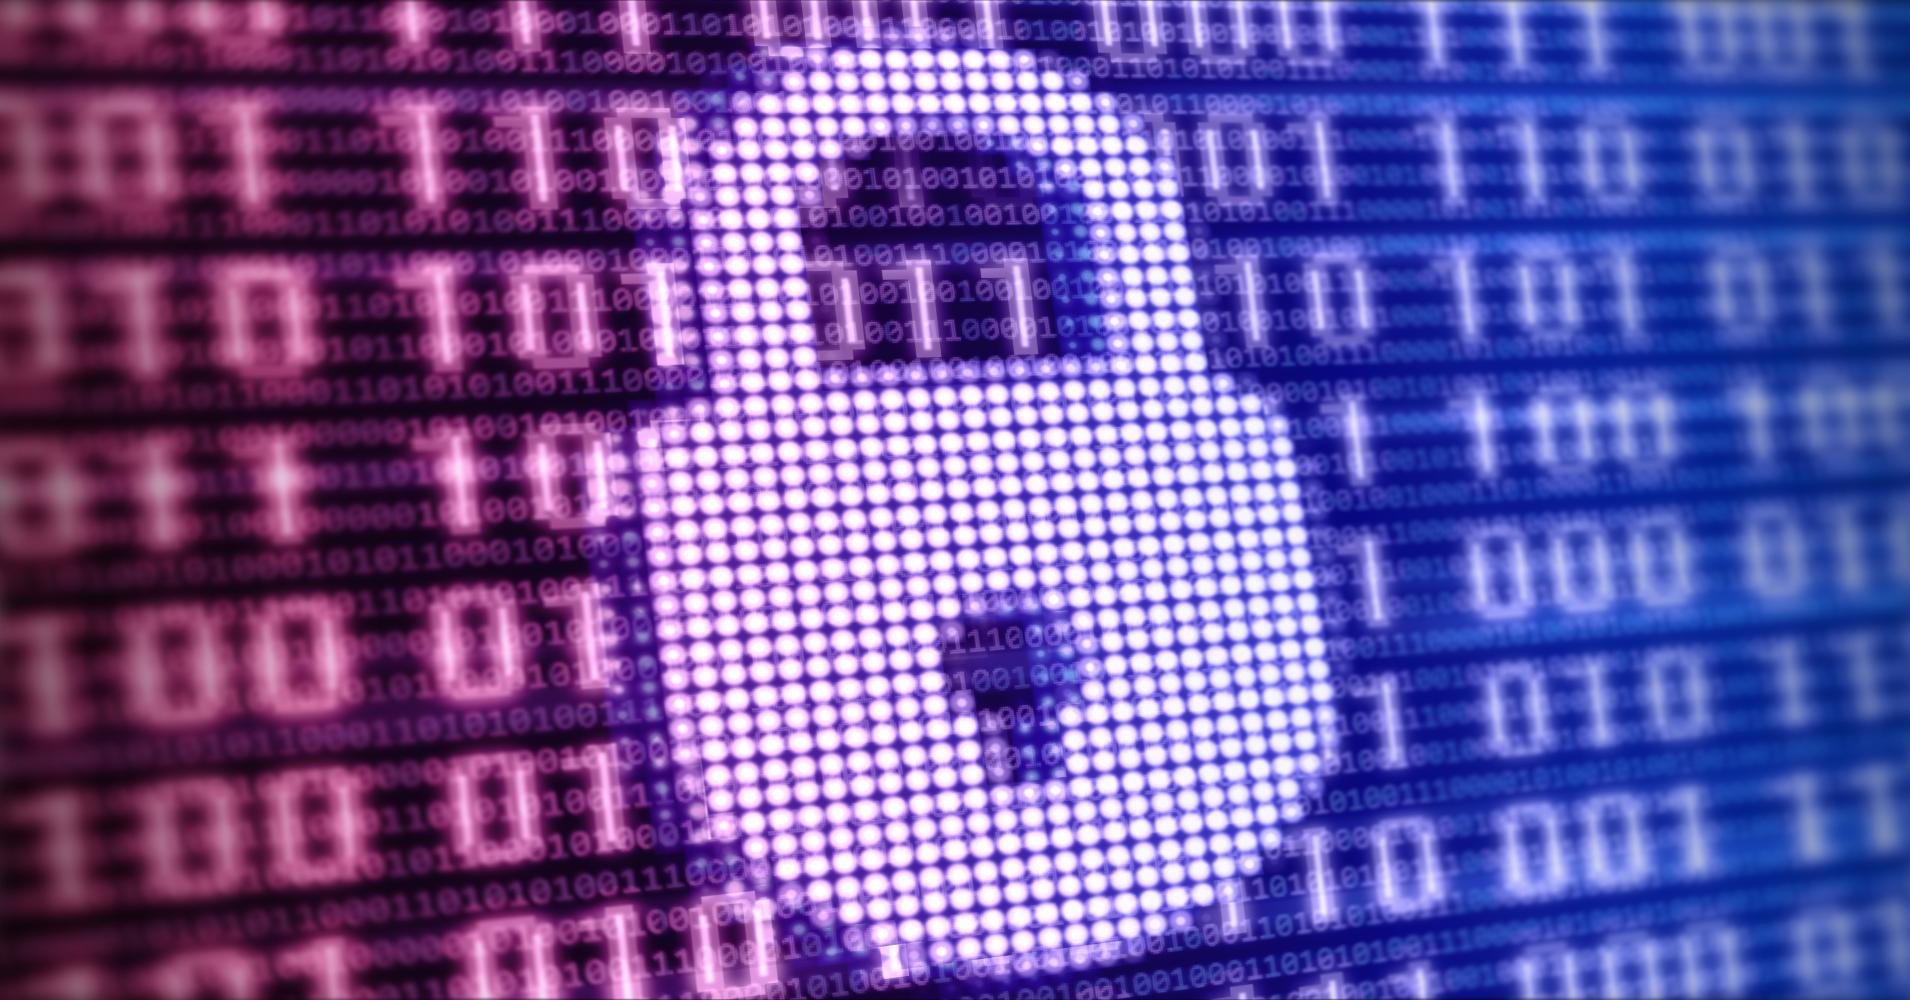 Πάνω από 700 εκατομμύρια διευθύνσεις email έχουν πέσει στα χέρια «χάκερ»